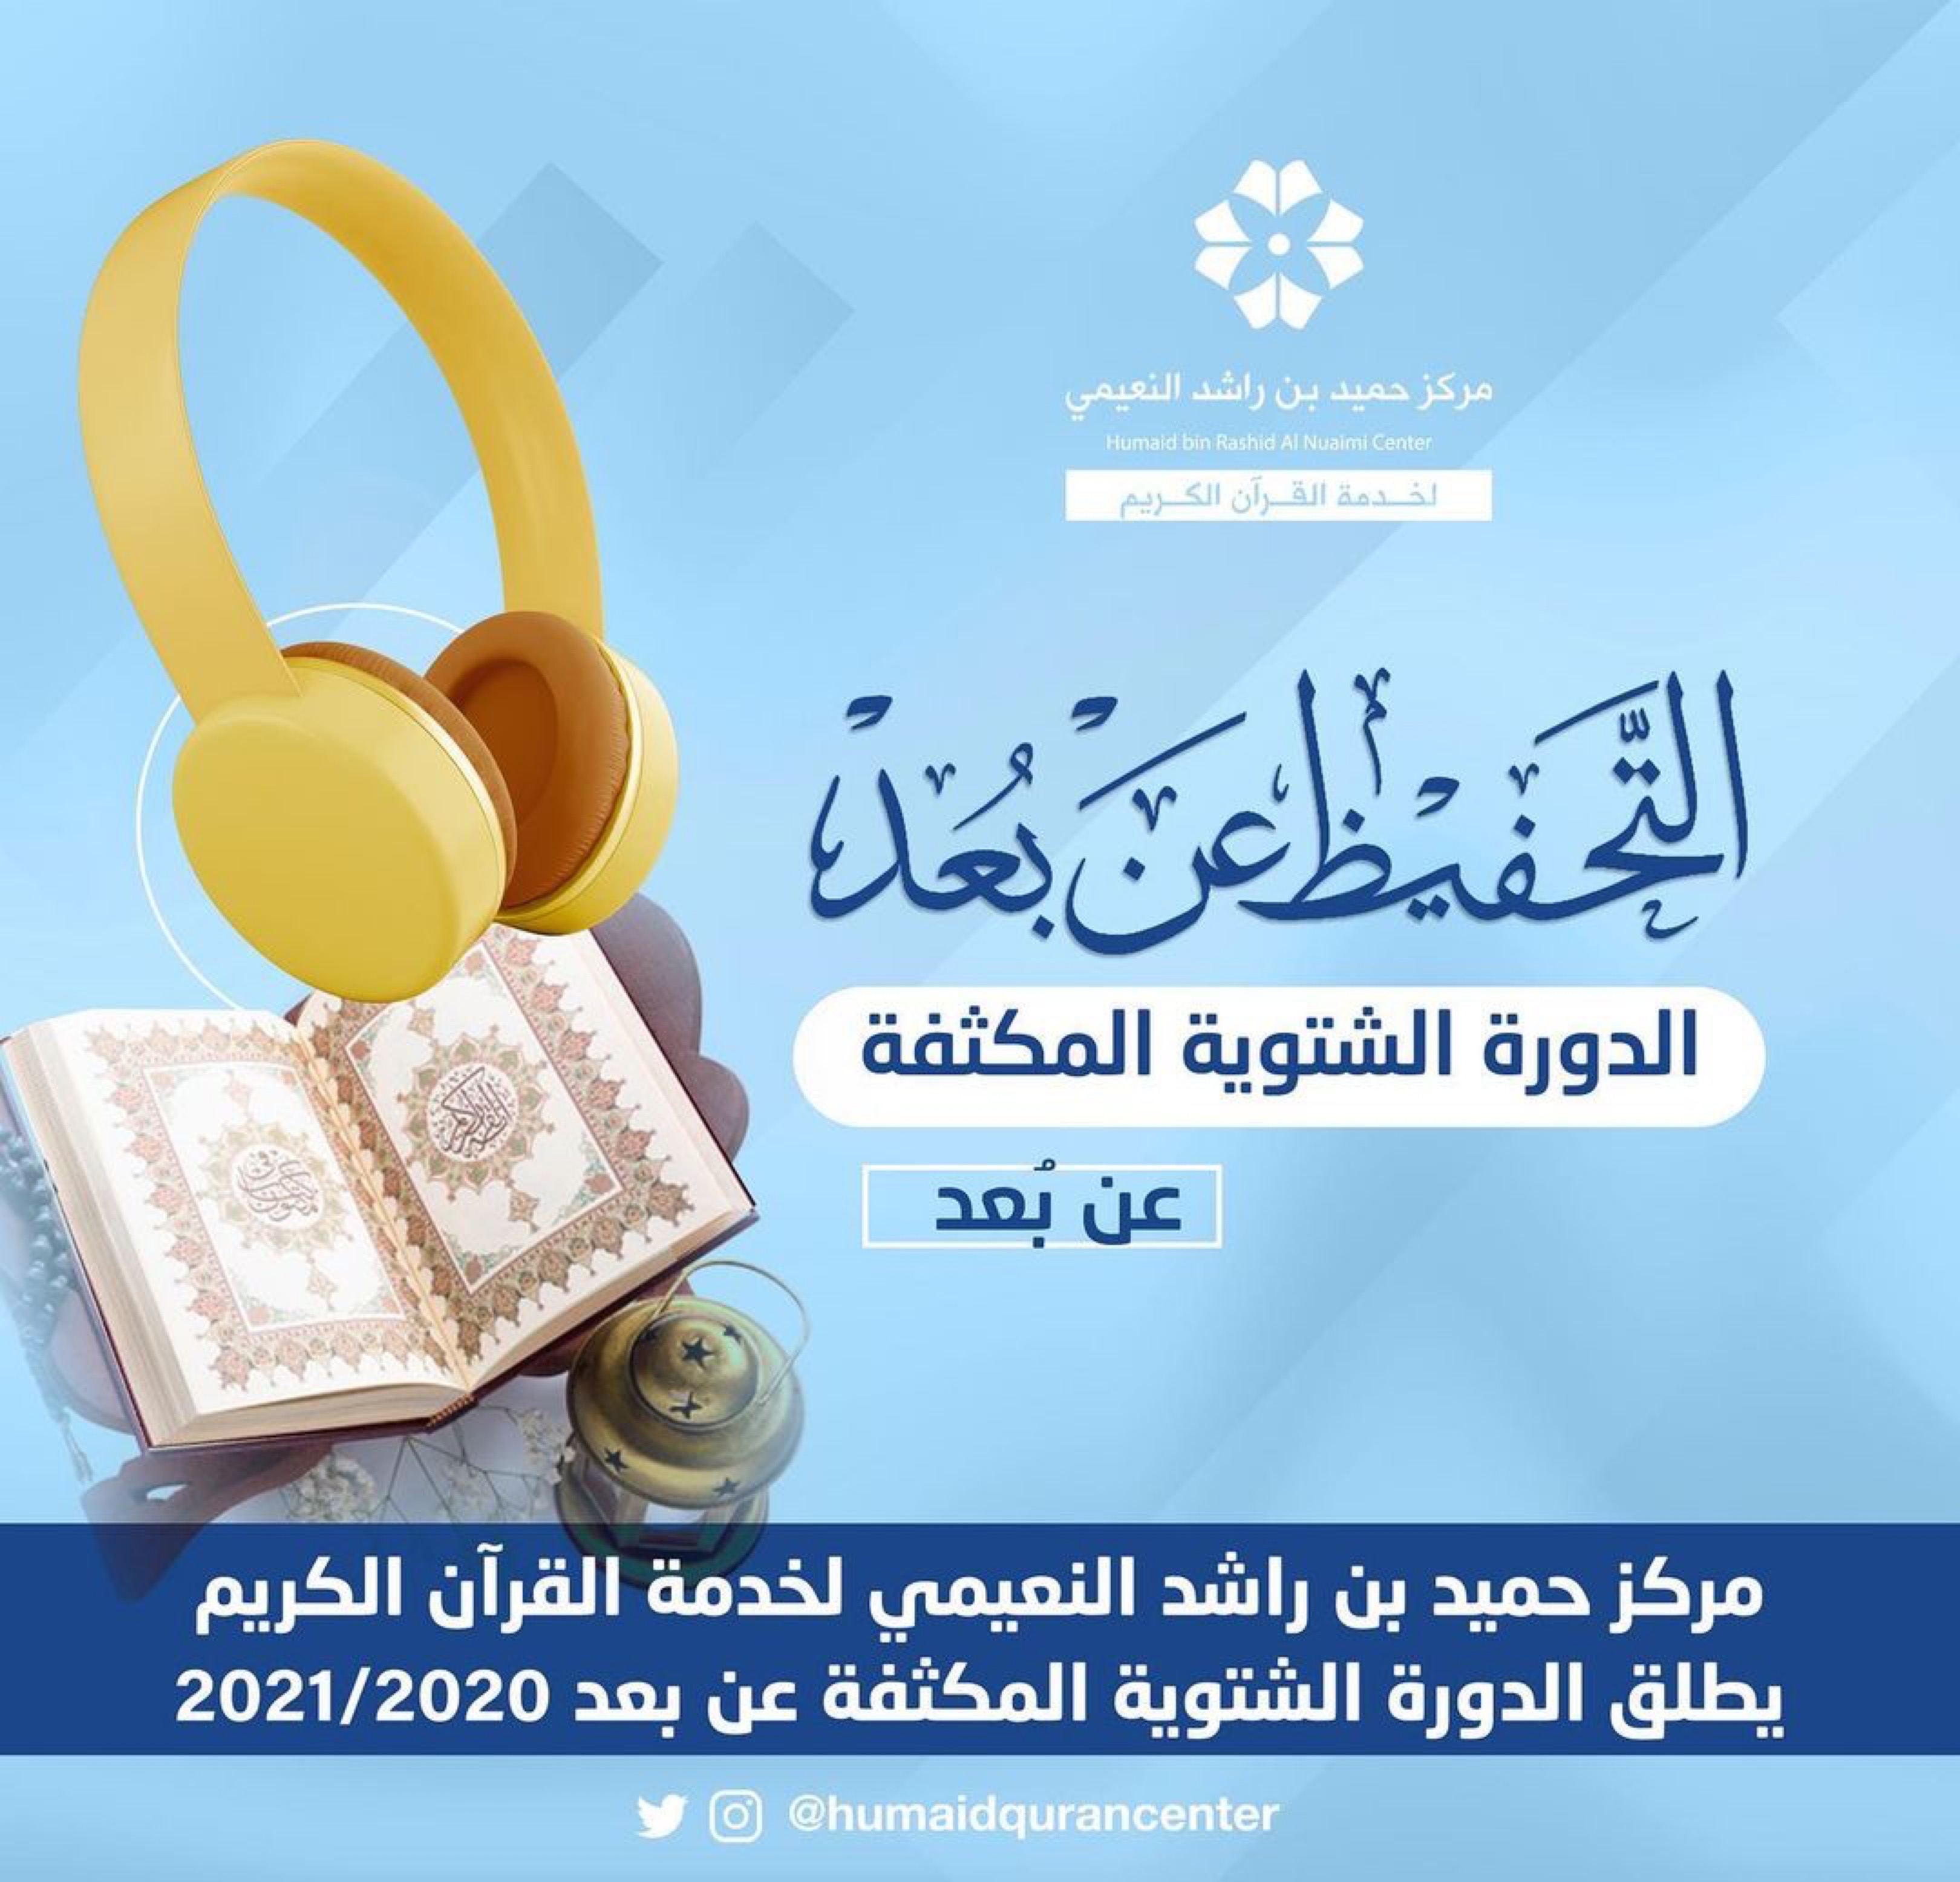 مركز حميد بن راشد النعيمي لخدمة القرآن الكريم يطلق الدورة الشتوية المكثفة عن بعد 